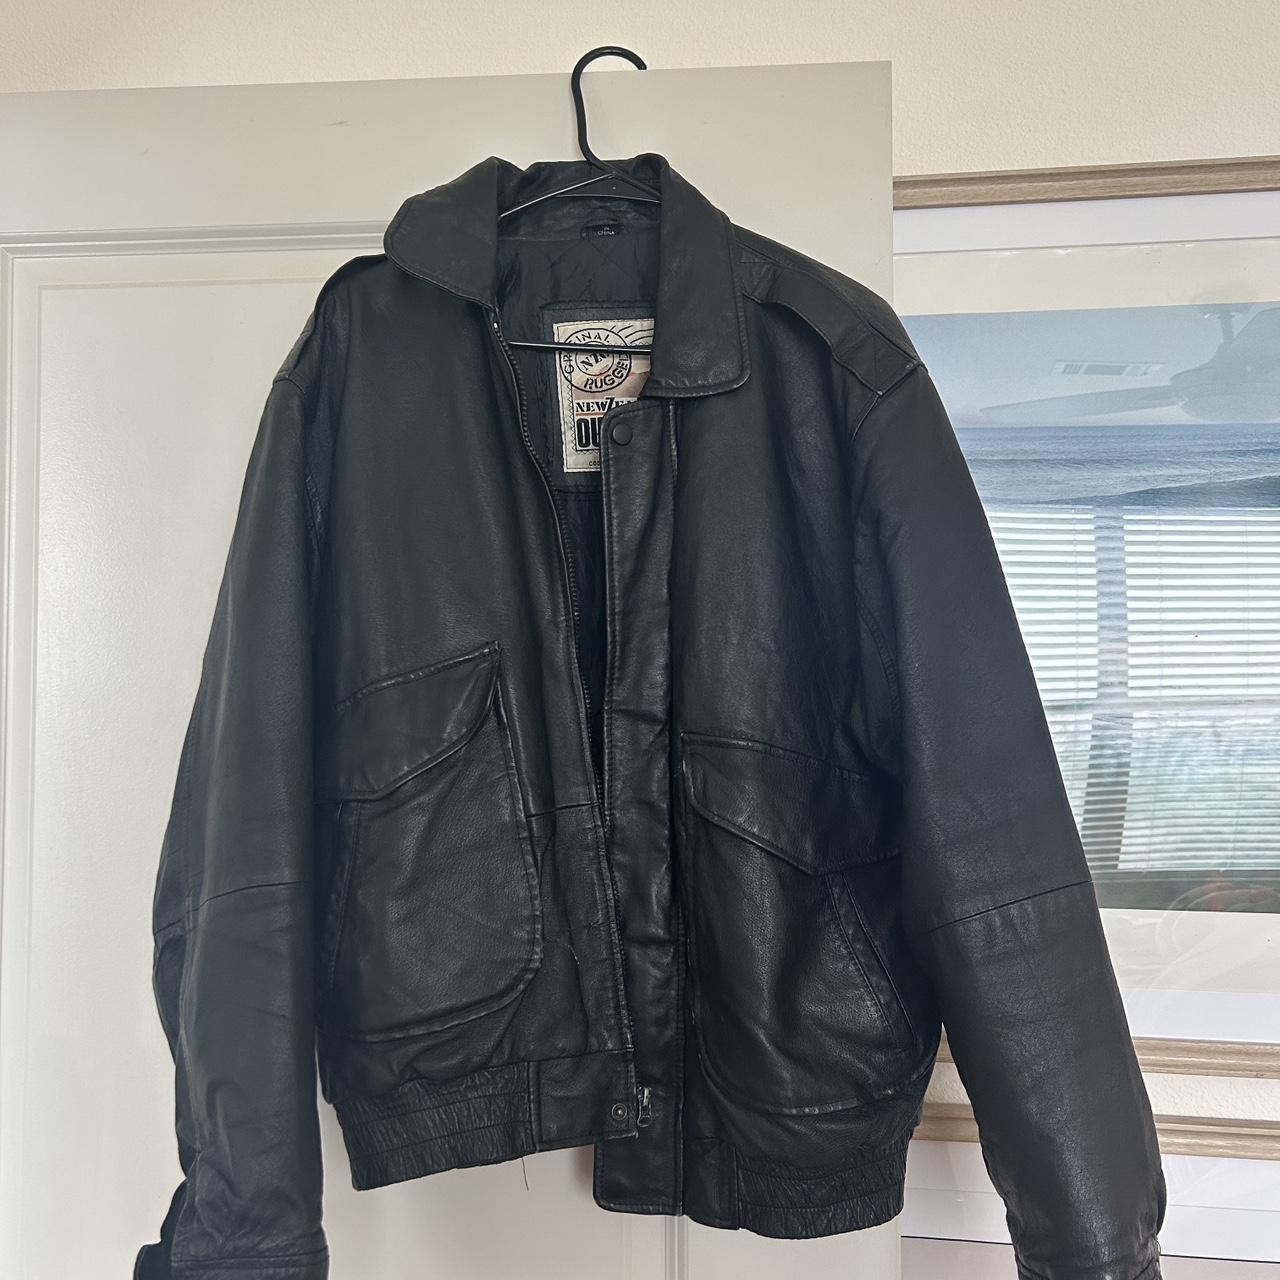 Vintage oversized genuine leather bomber jacket!... - Depop